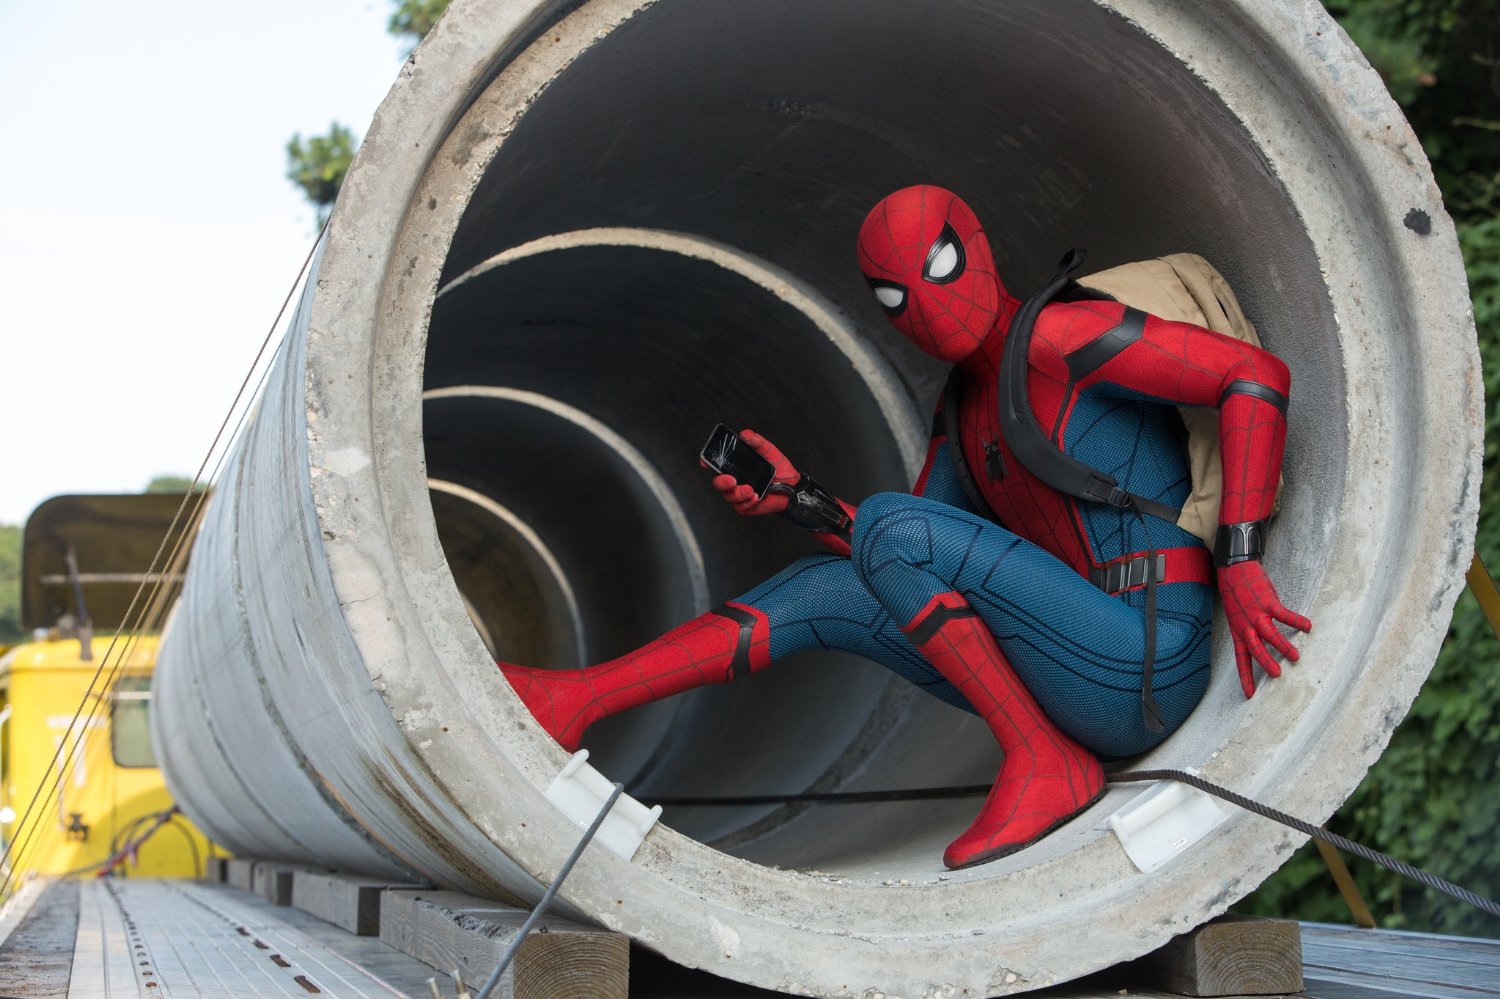 Spider-Man: Homecoming 3D - napisy